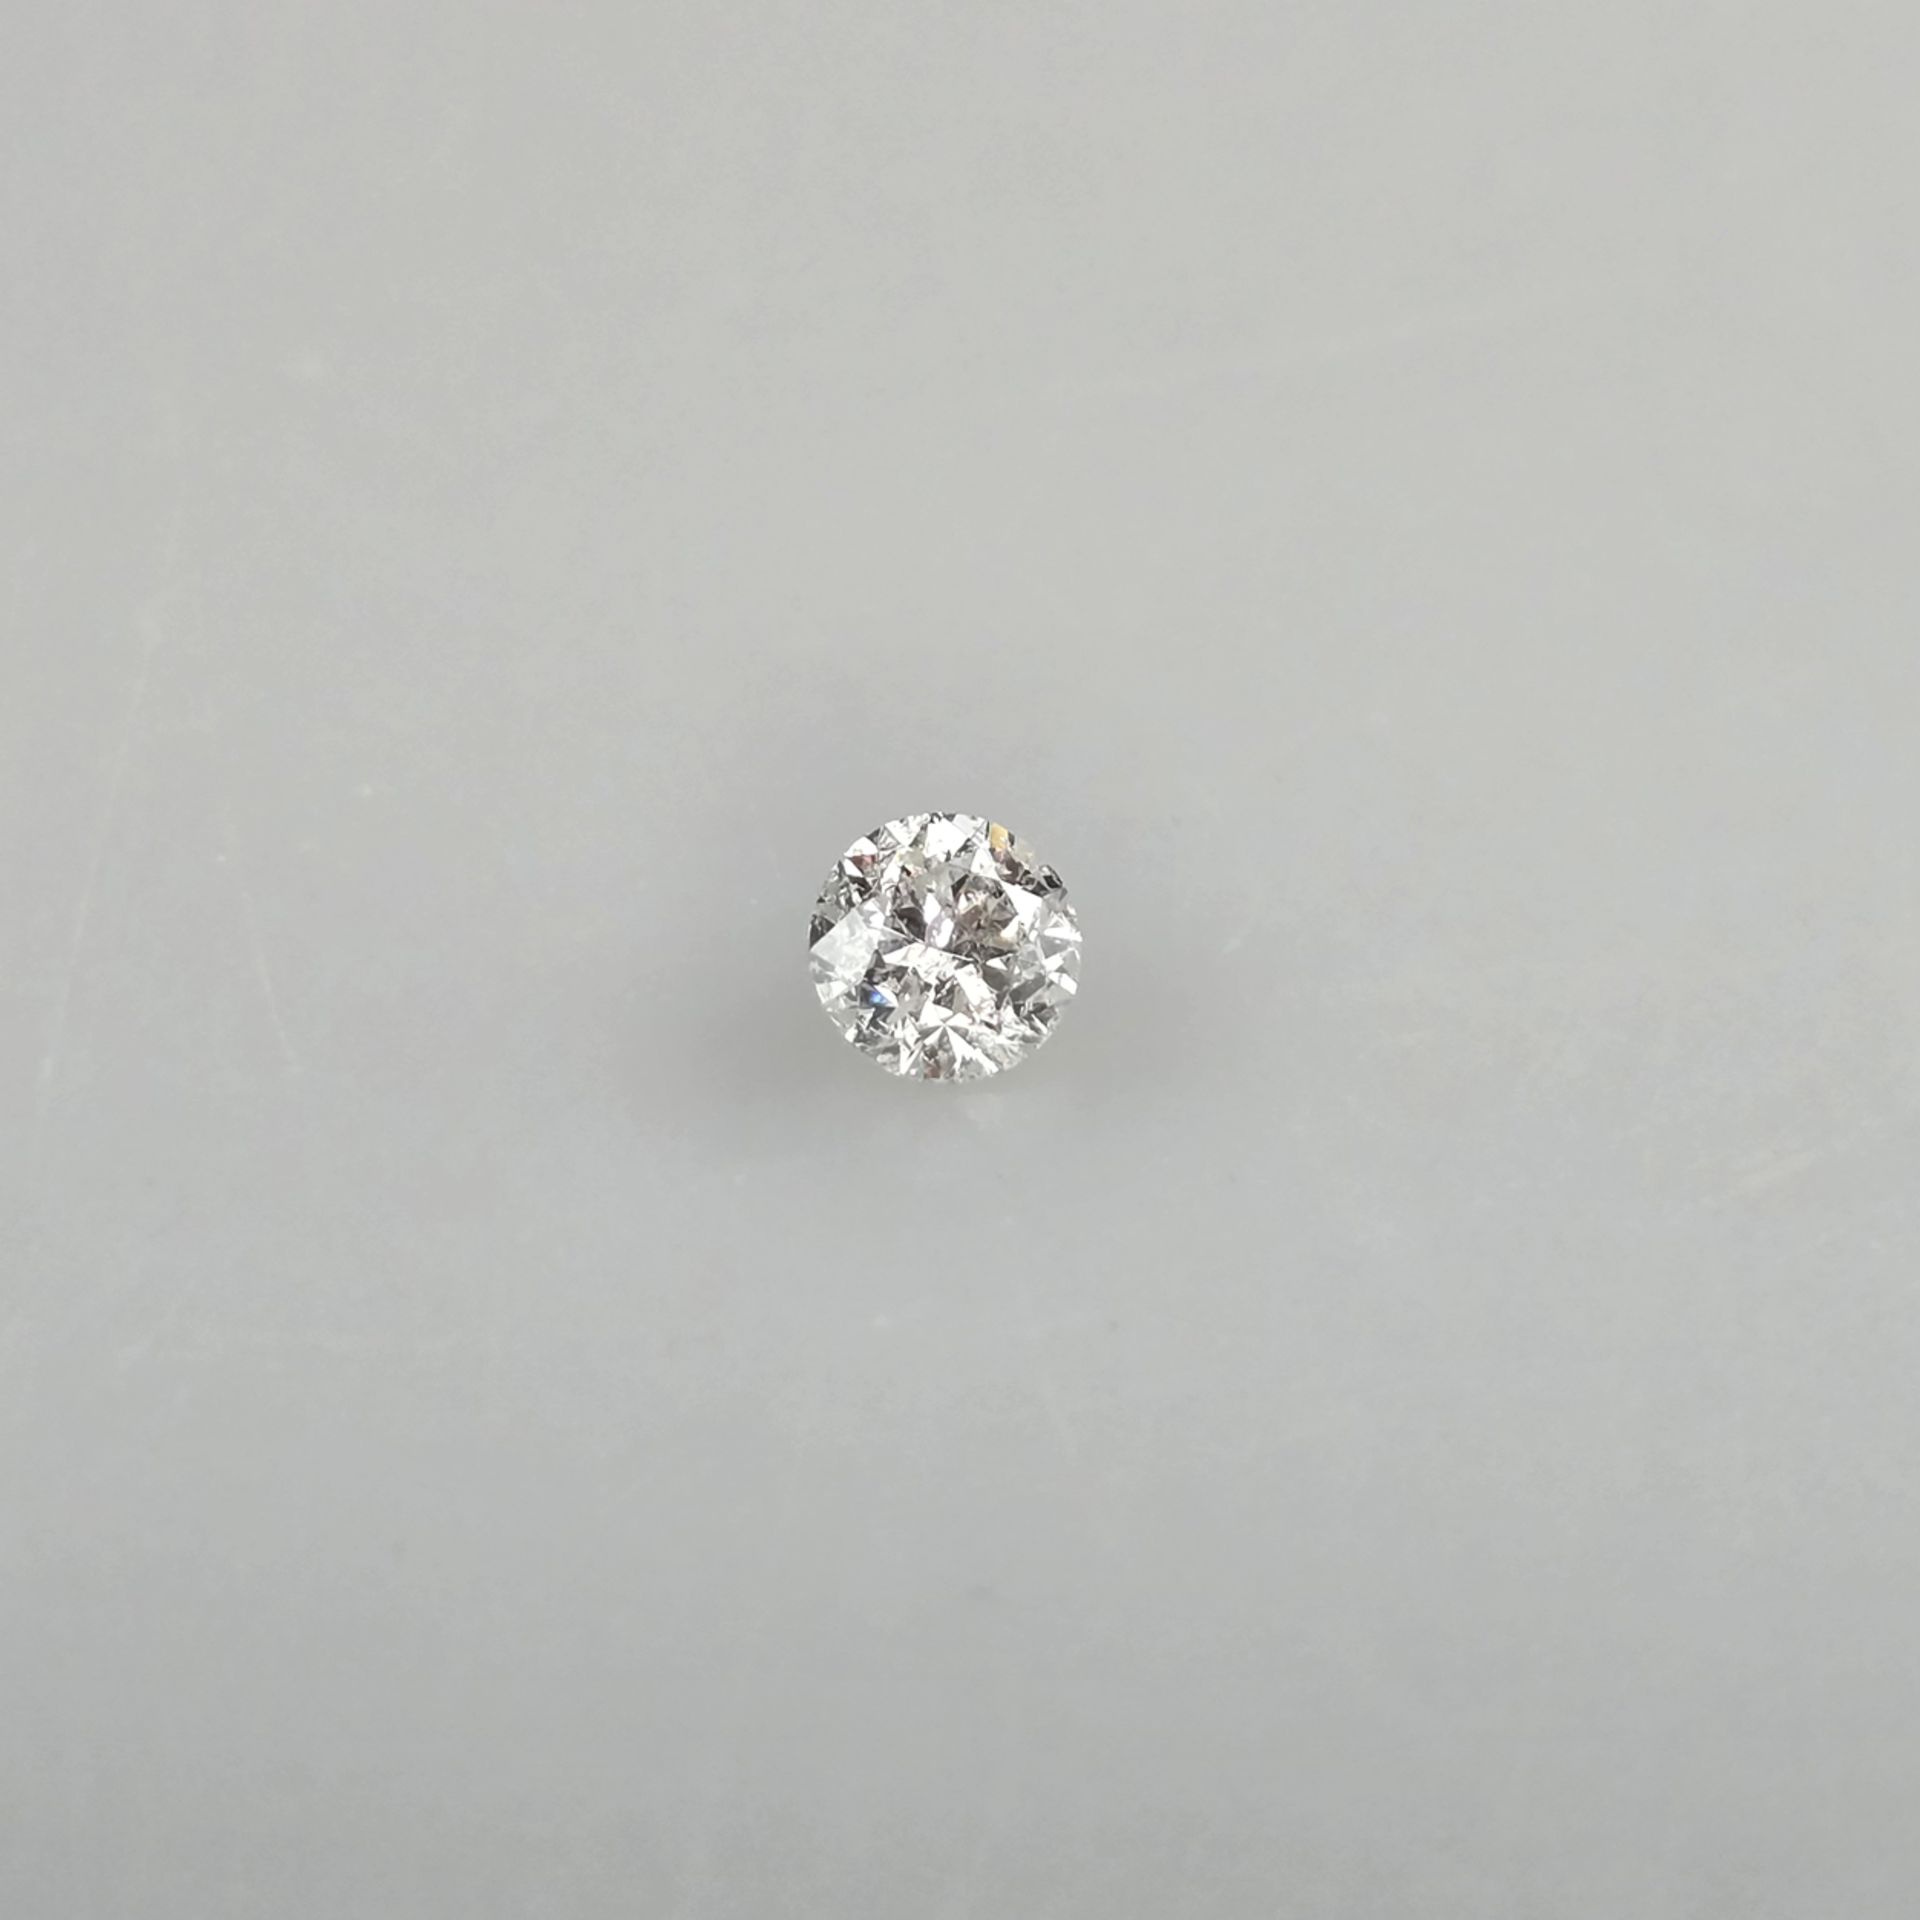 Loser natürlicher Diamant mit Lasersignatur - Gewicht 1,01 ct., sehr guter runder Brillantschliff, - Image 2 of 8